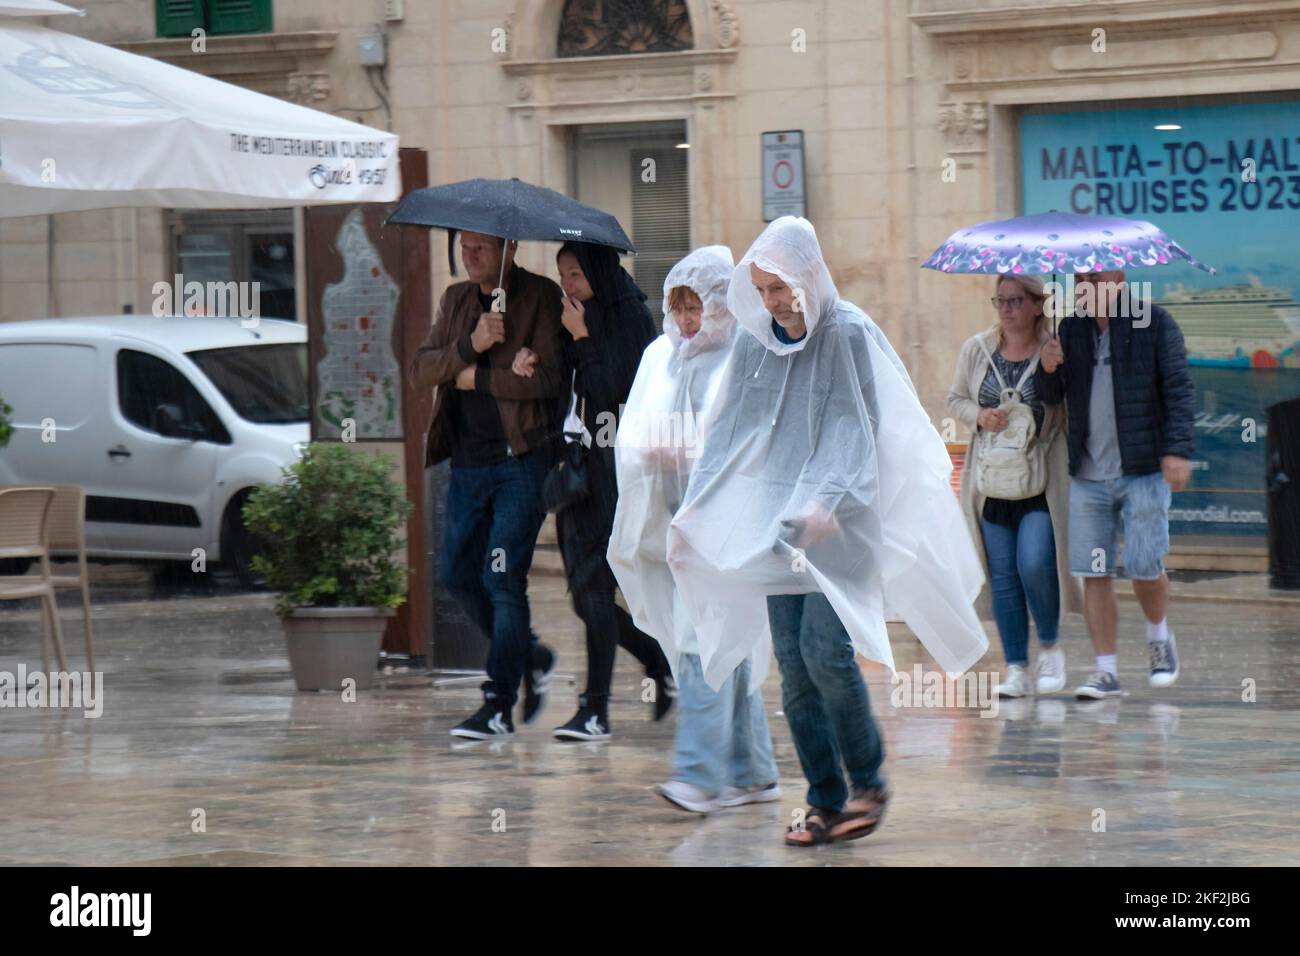 Valletta, Malta - 12. November 2022: Menschen, die Regenponchos tragen und Regenschirme halten, laufen an einem regnerischen Tag Stockfoto